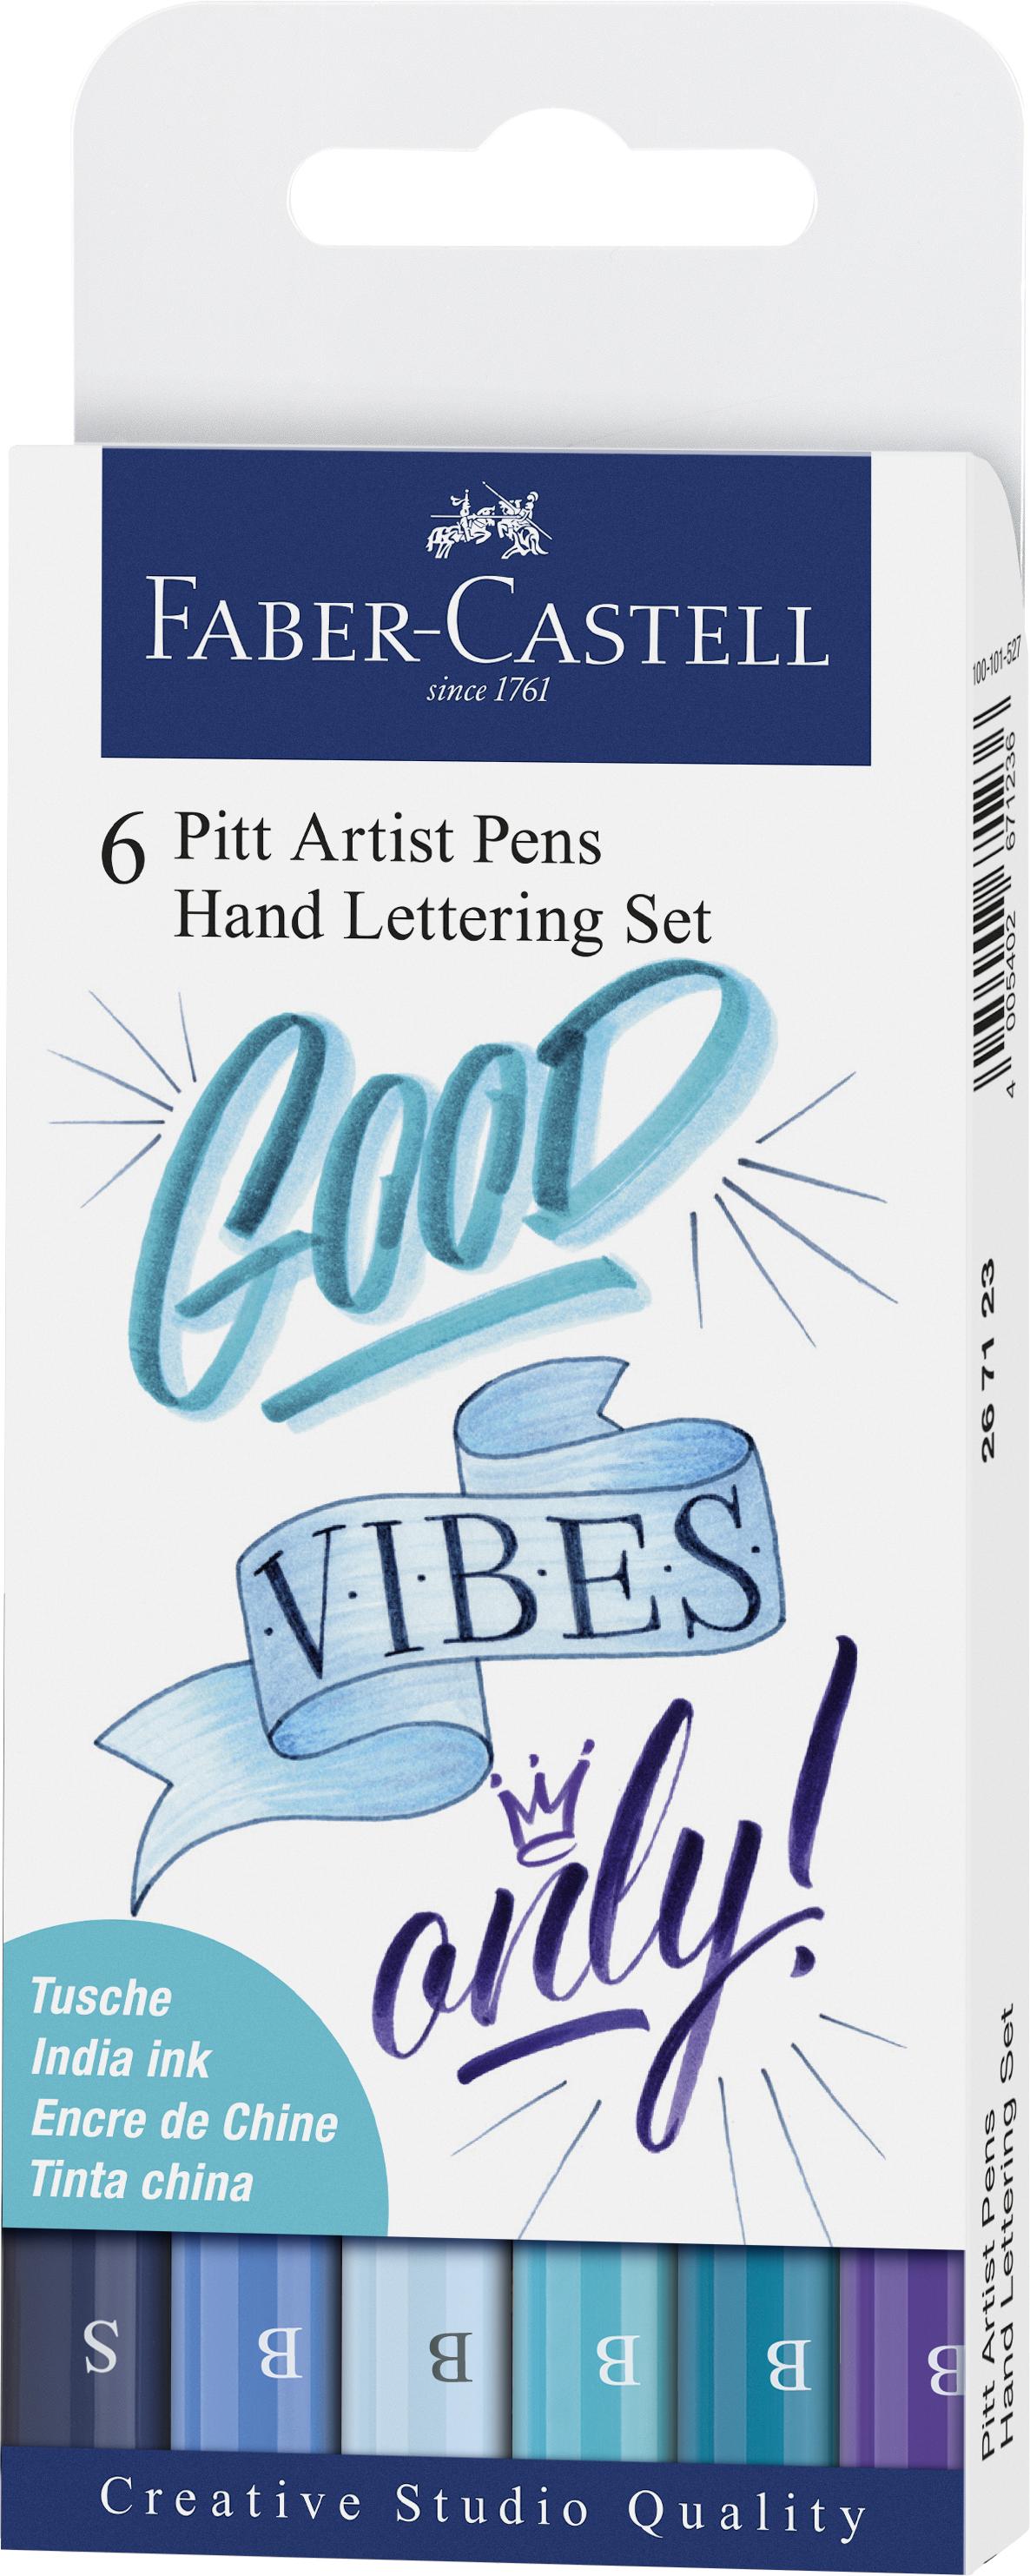 Faber-Castell - India ink Pitt Artist Pen Lettering (6 pcs) (267123) - Leker